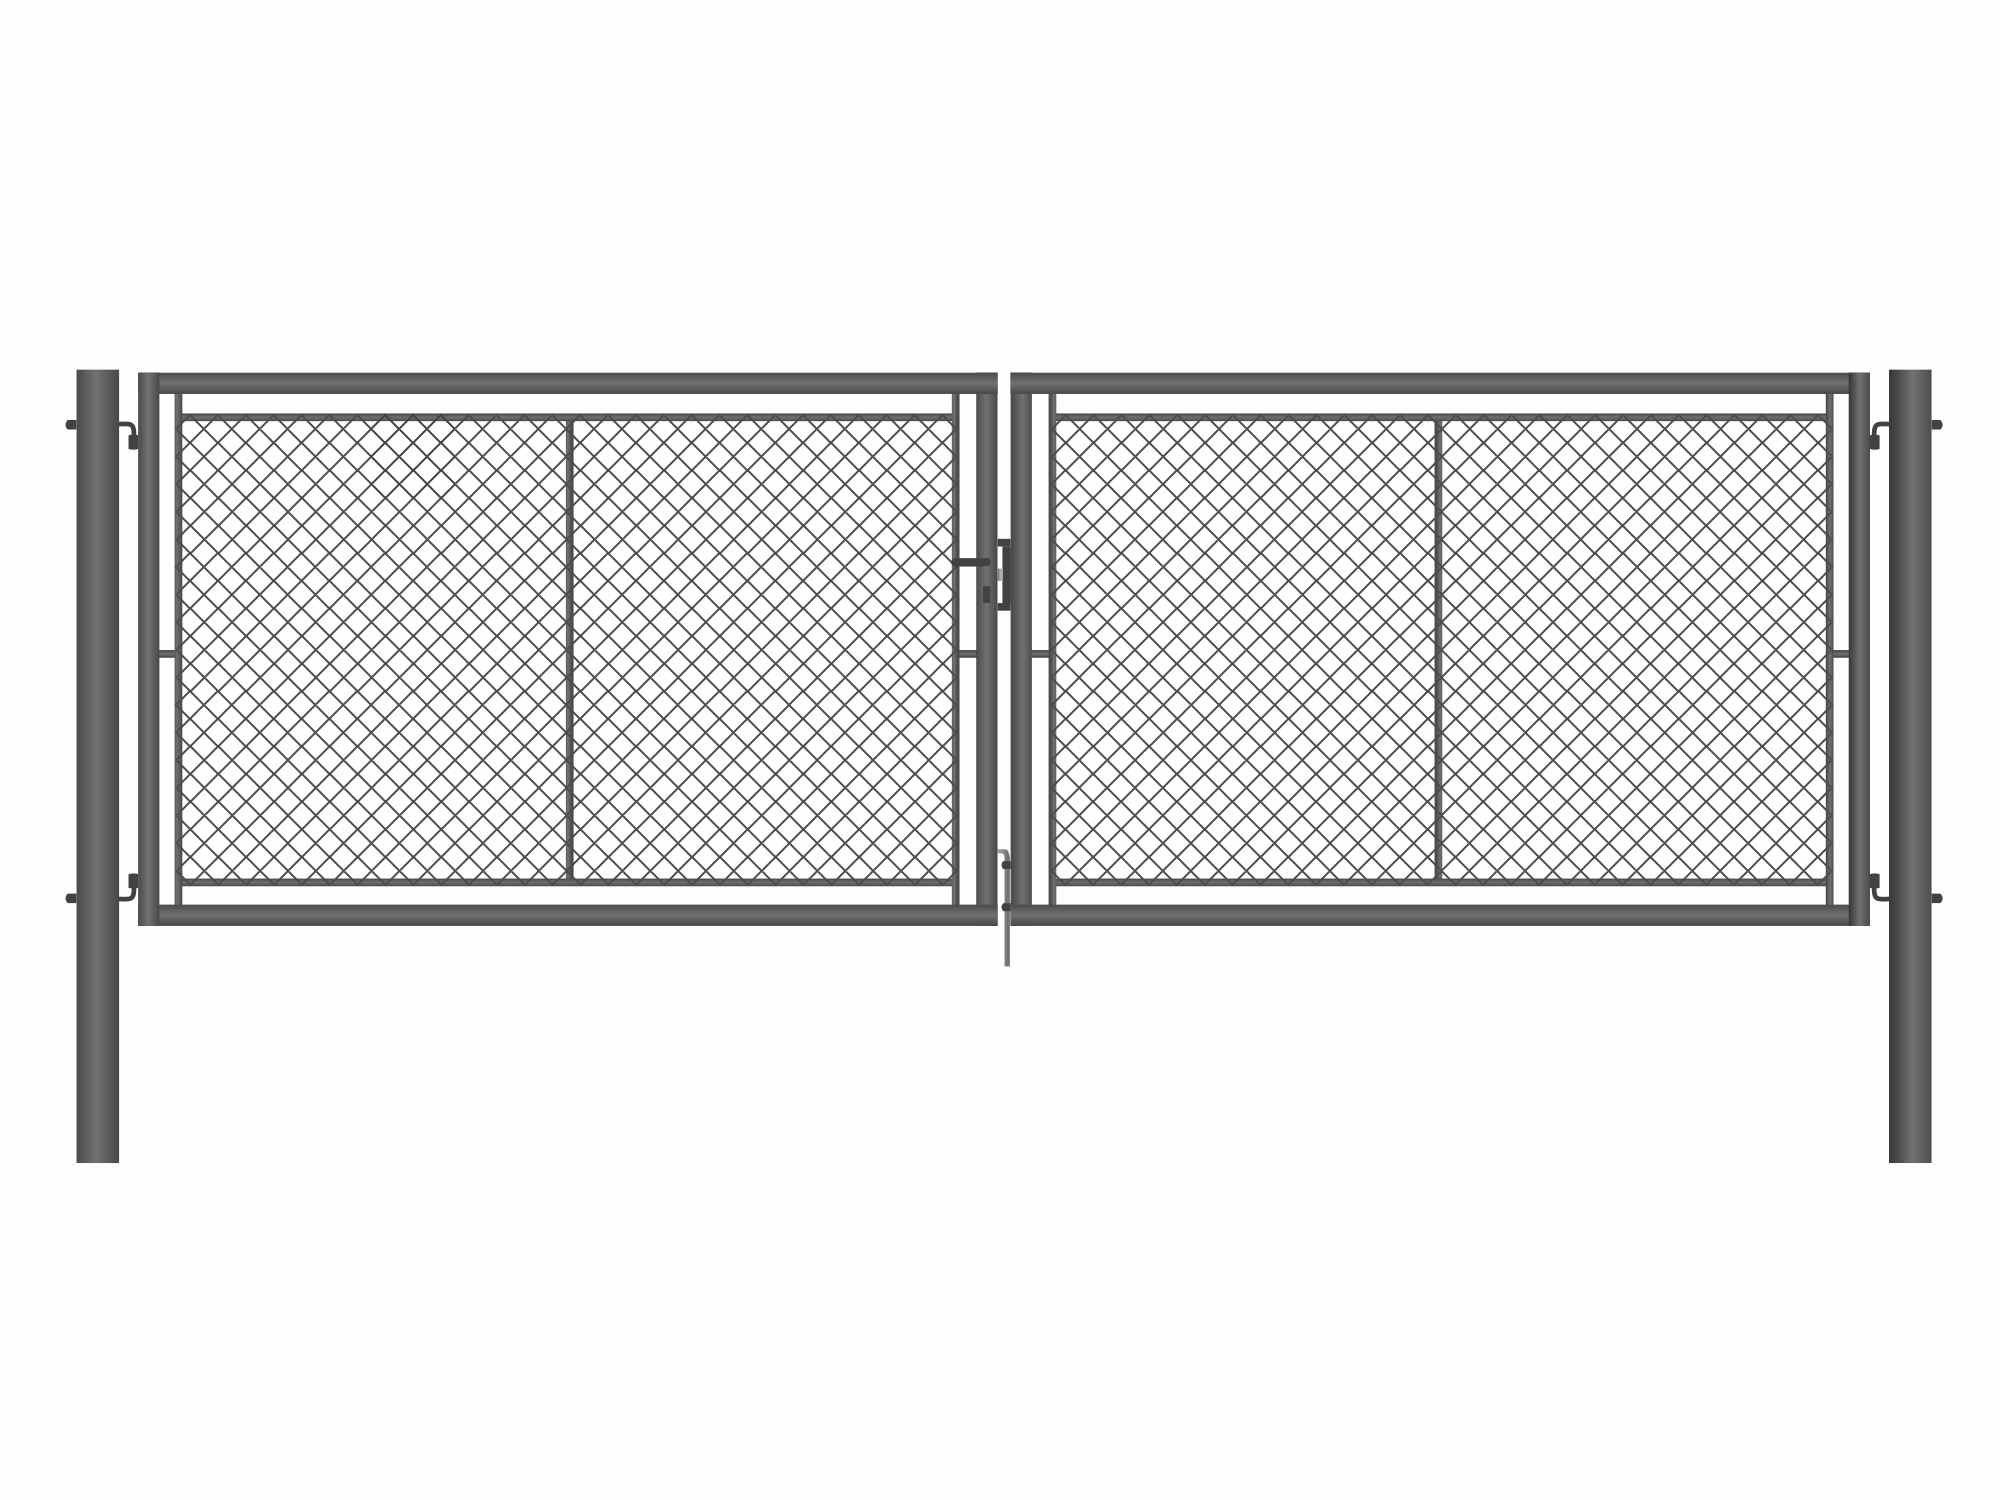 Brána zahradní dvoukřídlá antracit, výška 100 x 500 cm, FAB, s výplní klasického pletiva PLOTY Sklad5 9891 535